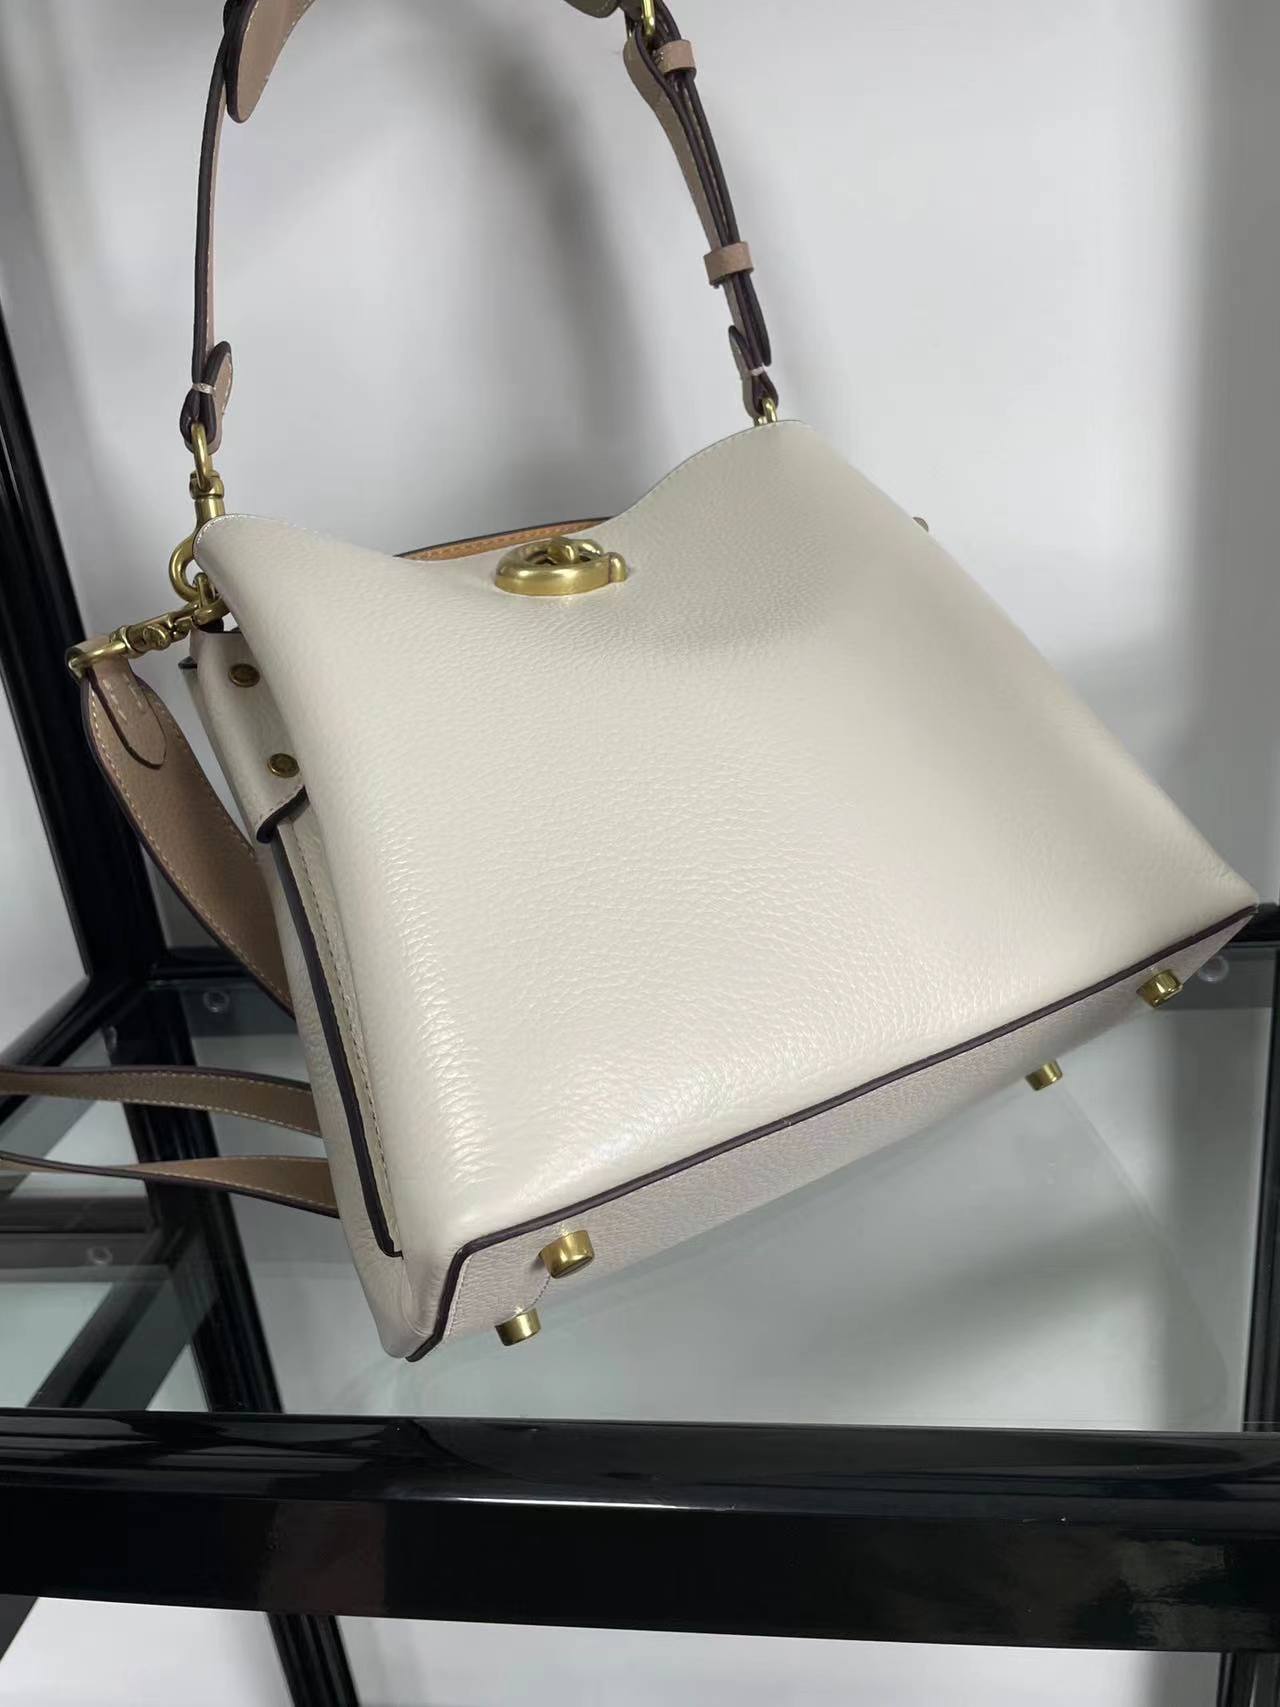 Luxury accessories women's handbag